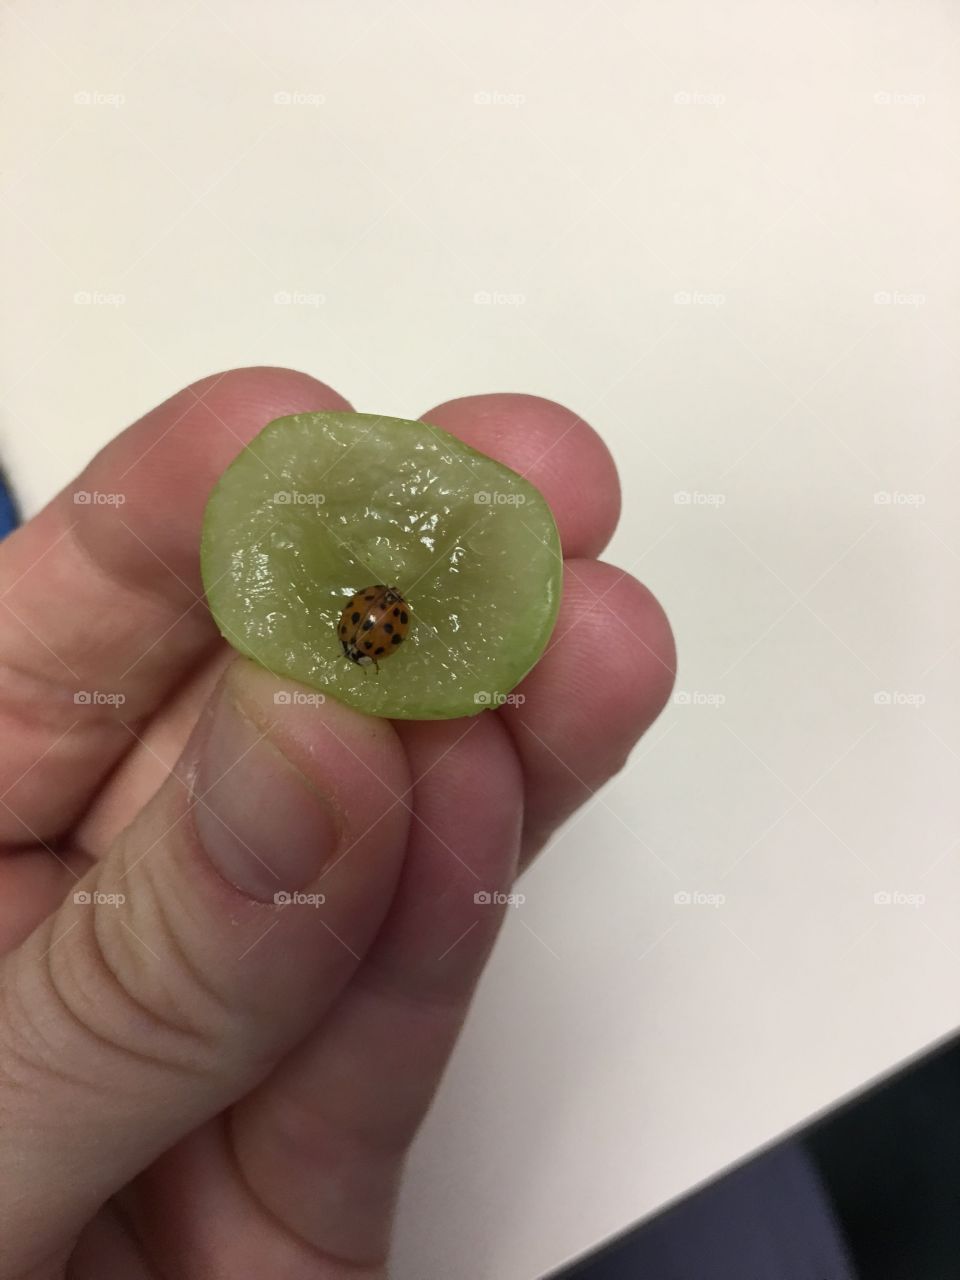 Ladybug eating a grape